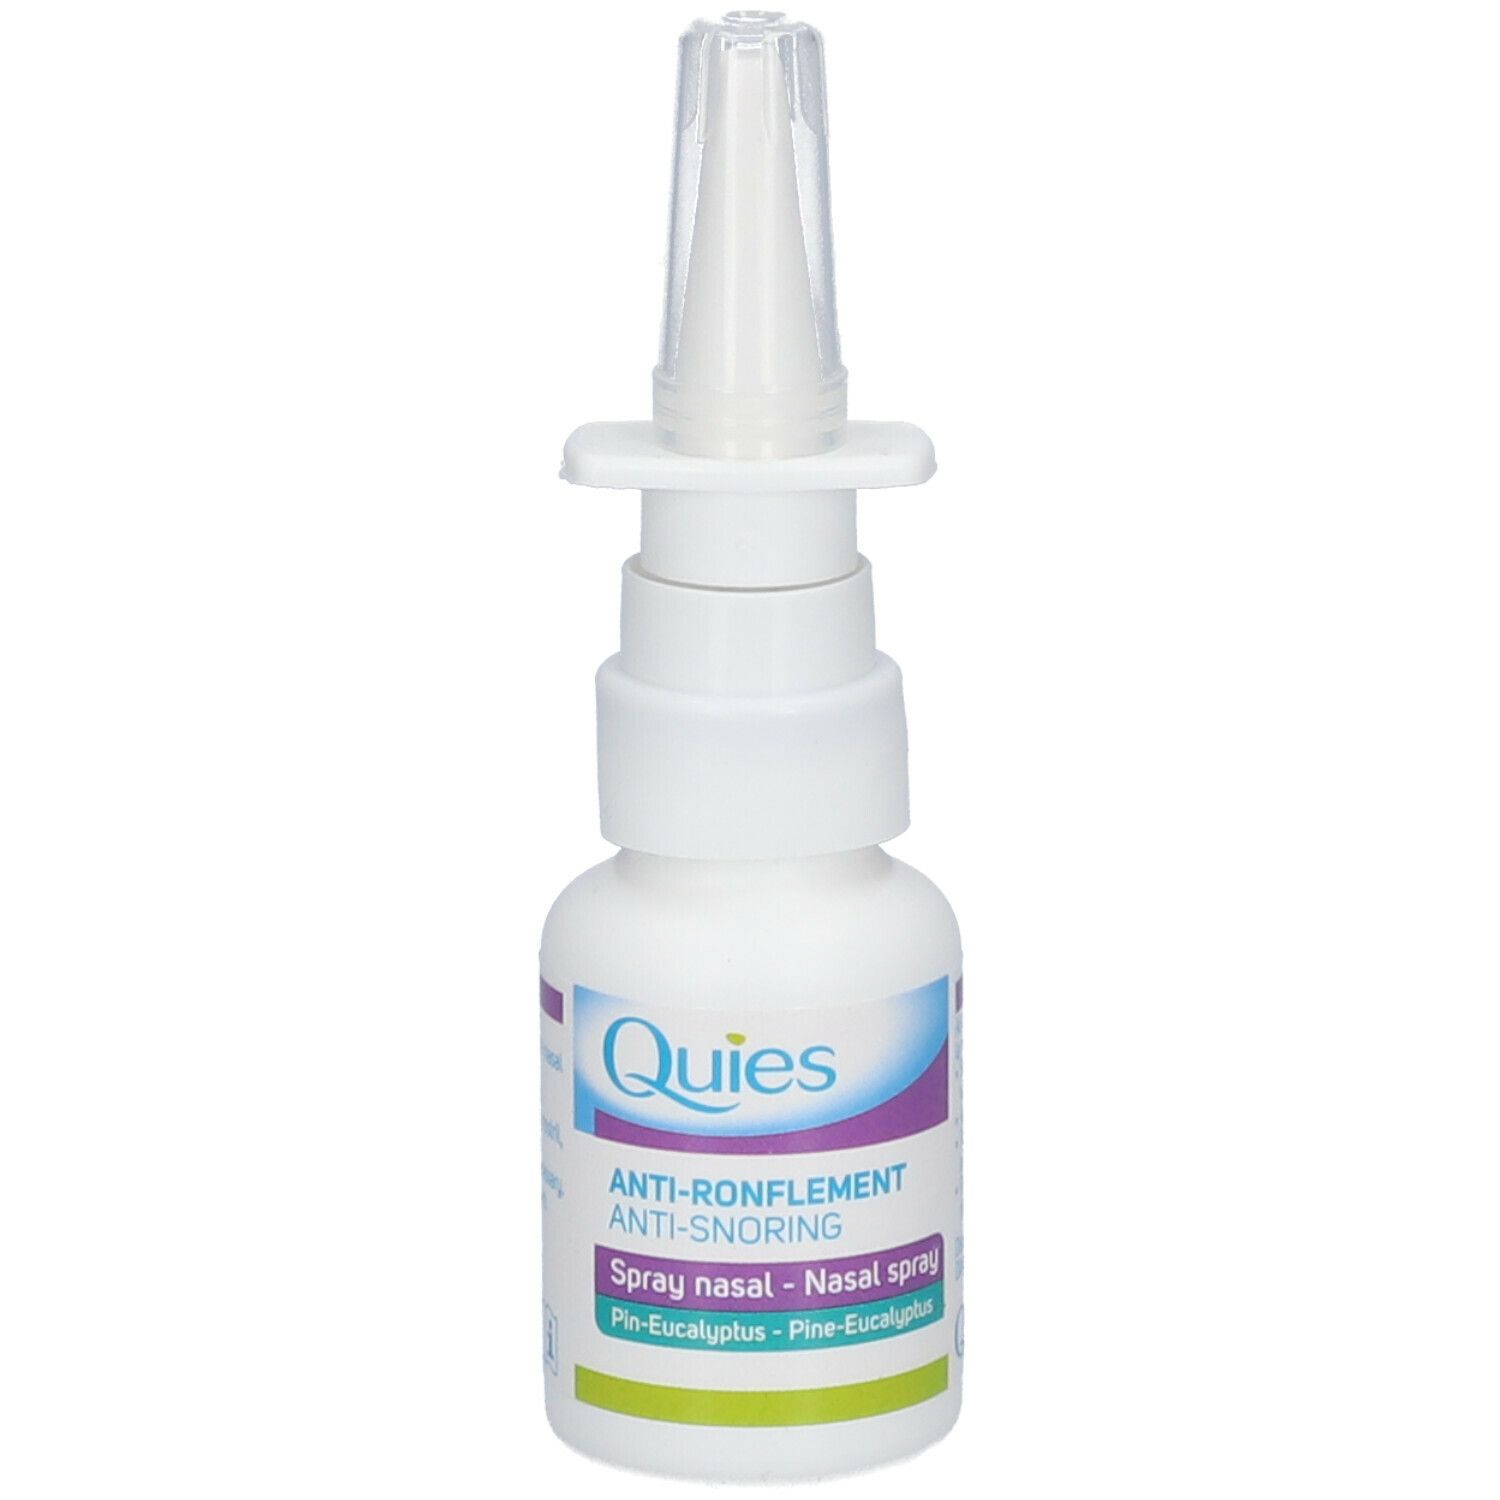 Quies Spray Nasal Anti-Ronflement, 15 ml